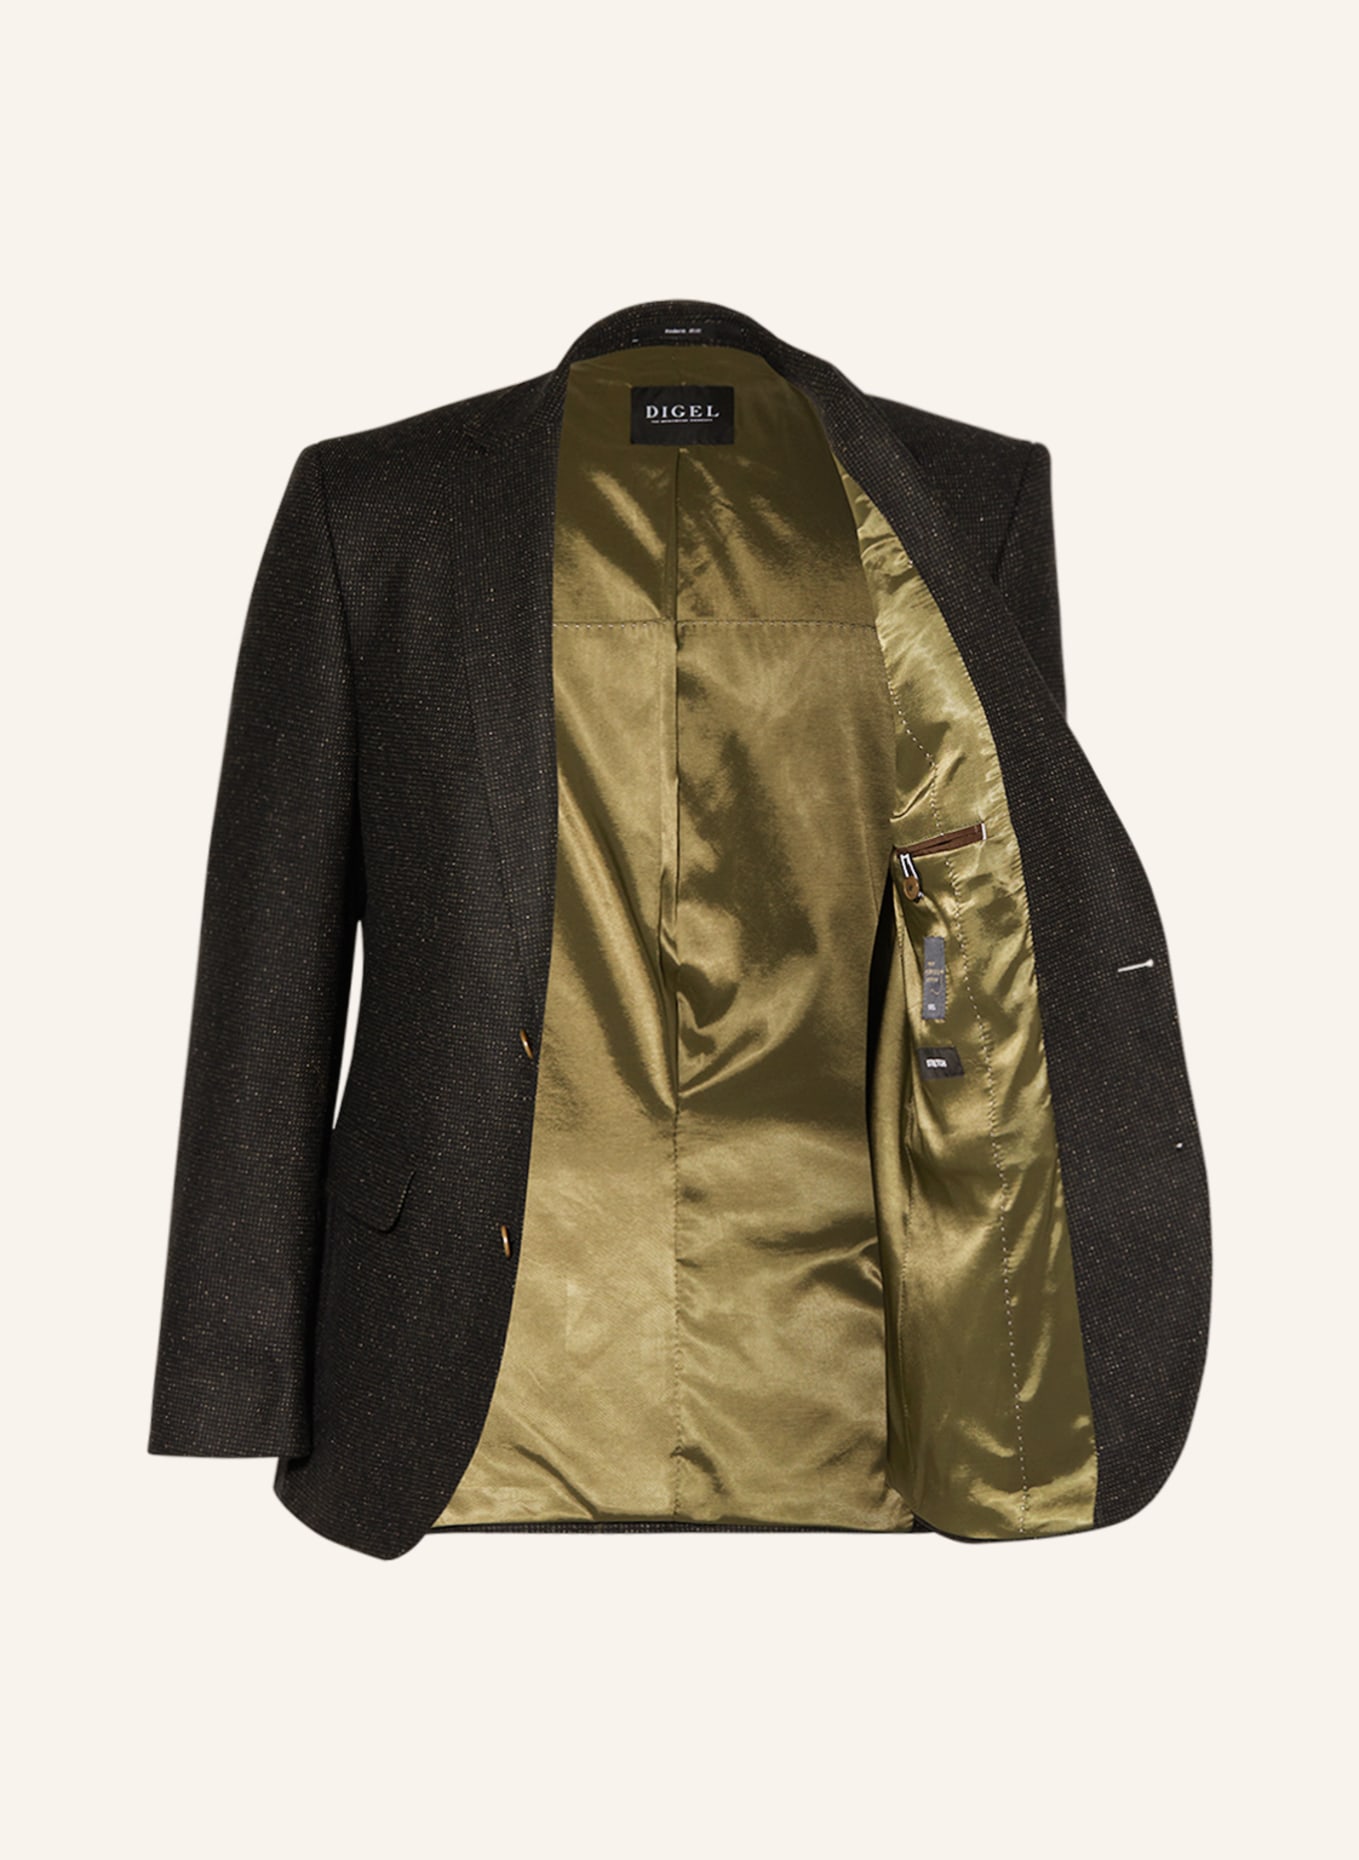 DIGEL Suit jacket EZZO regular fit, Color: 52 Grün (Image 4)